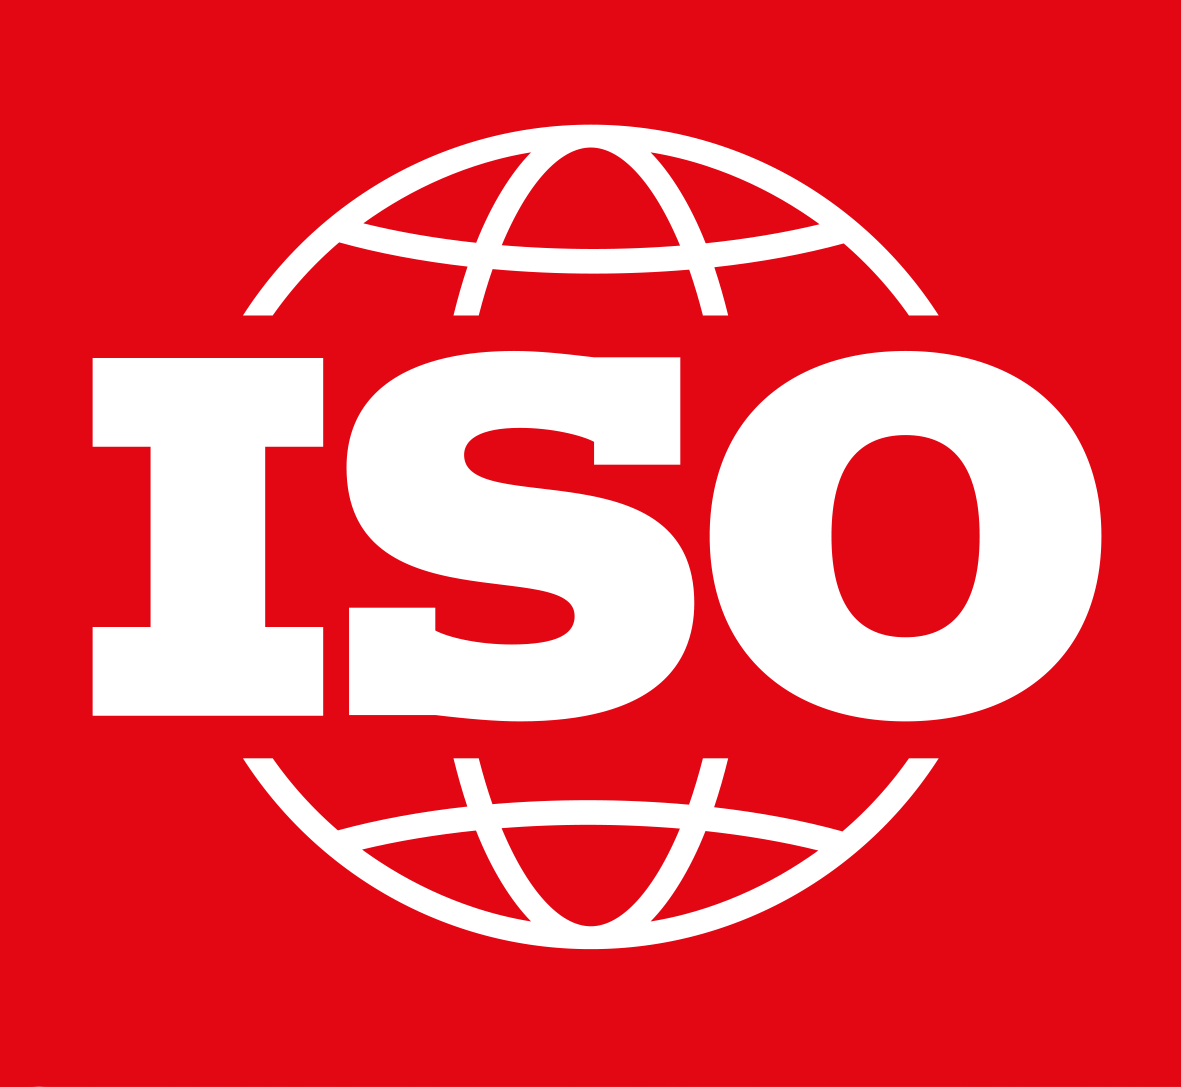 Chứng chỉ ISO 14001 là gì? Là sản phẩm của tổ chức quốc tế về tiêu chuẩn hóa - ISO